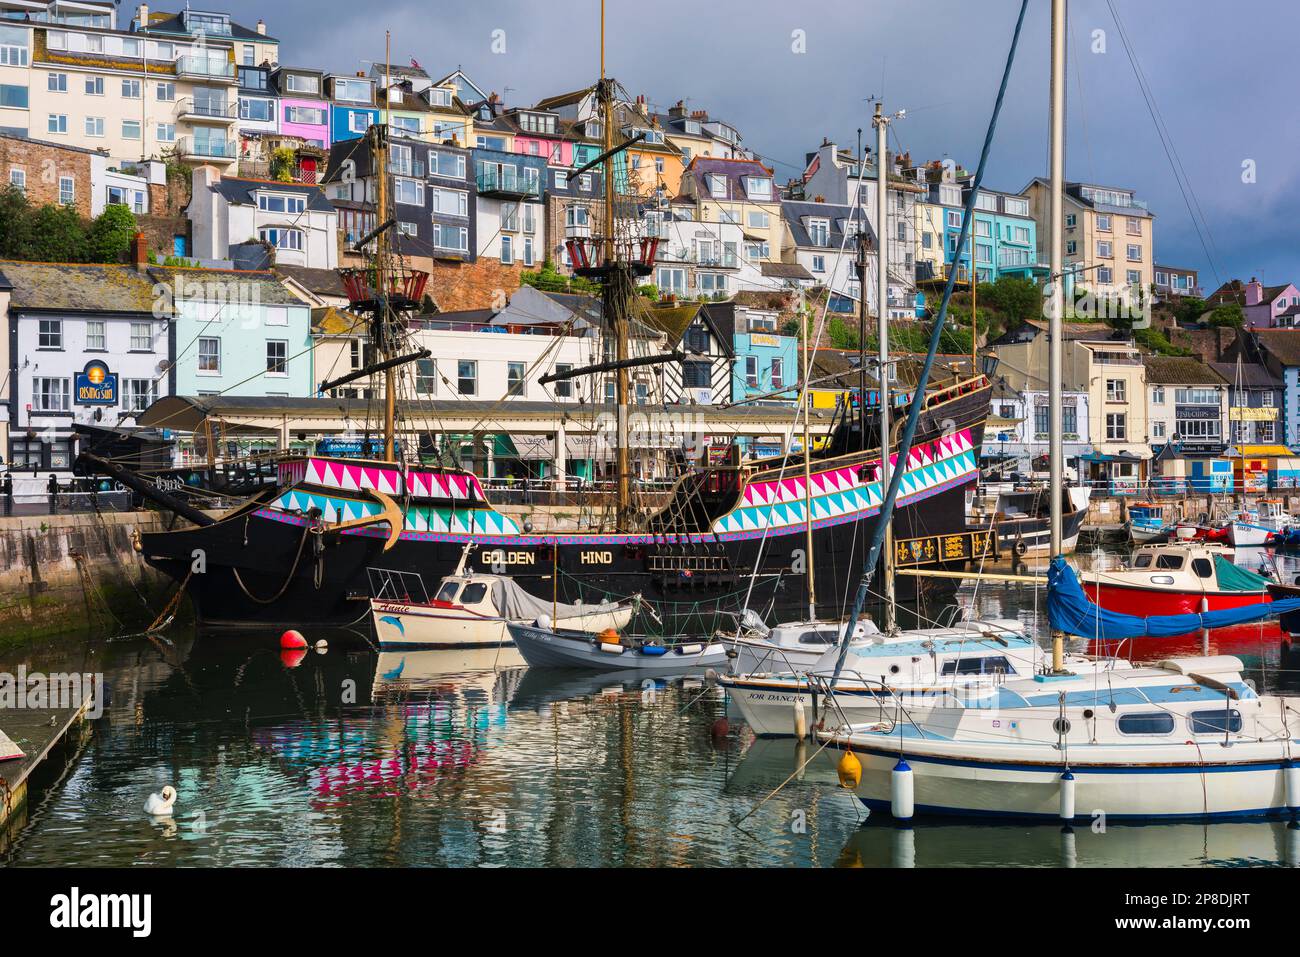 Südwestengland Sommer, Blick auf Yachten und eine Nachbildung der historischen Golden Hind im Hafen von Brixham, Torbay, Devon, Südwestengland, Großbritannien Stockfoto